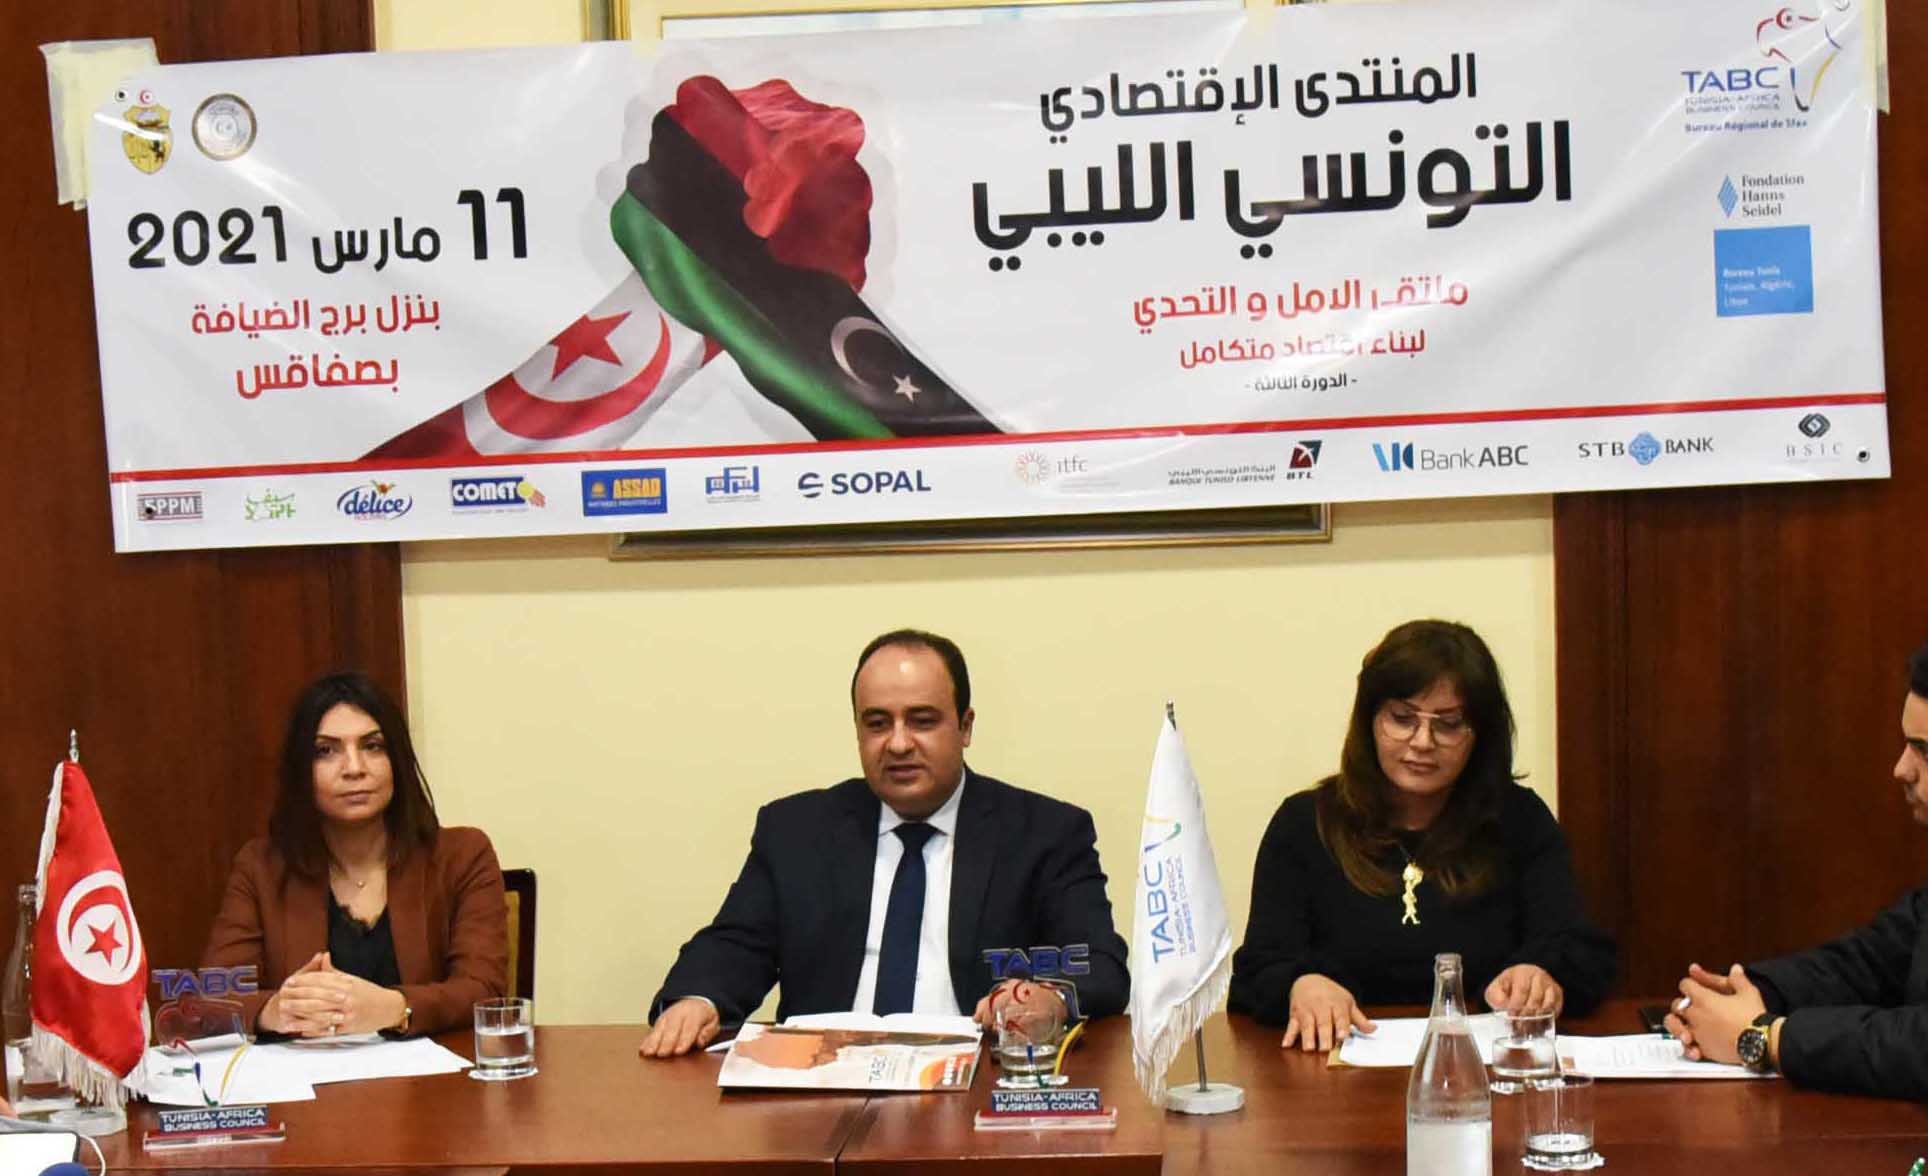 صفاقس تحتضن المنتدى الإقتصادي التونسي الليبي الأسبوع القادم, تحت شعار "ملتقى الأمل والتحدي لبناء إقتصاد متكامل"